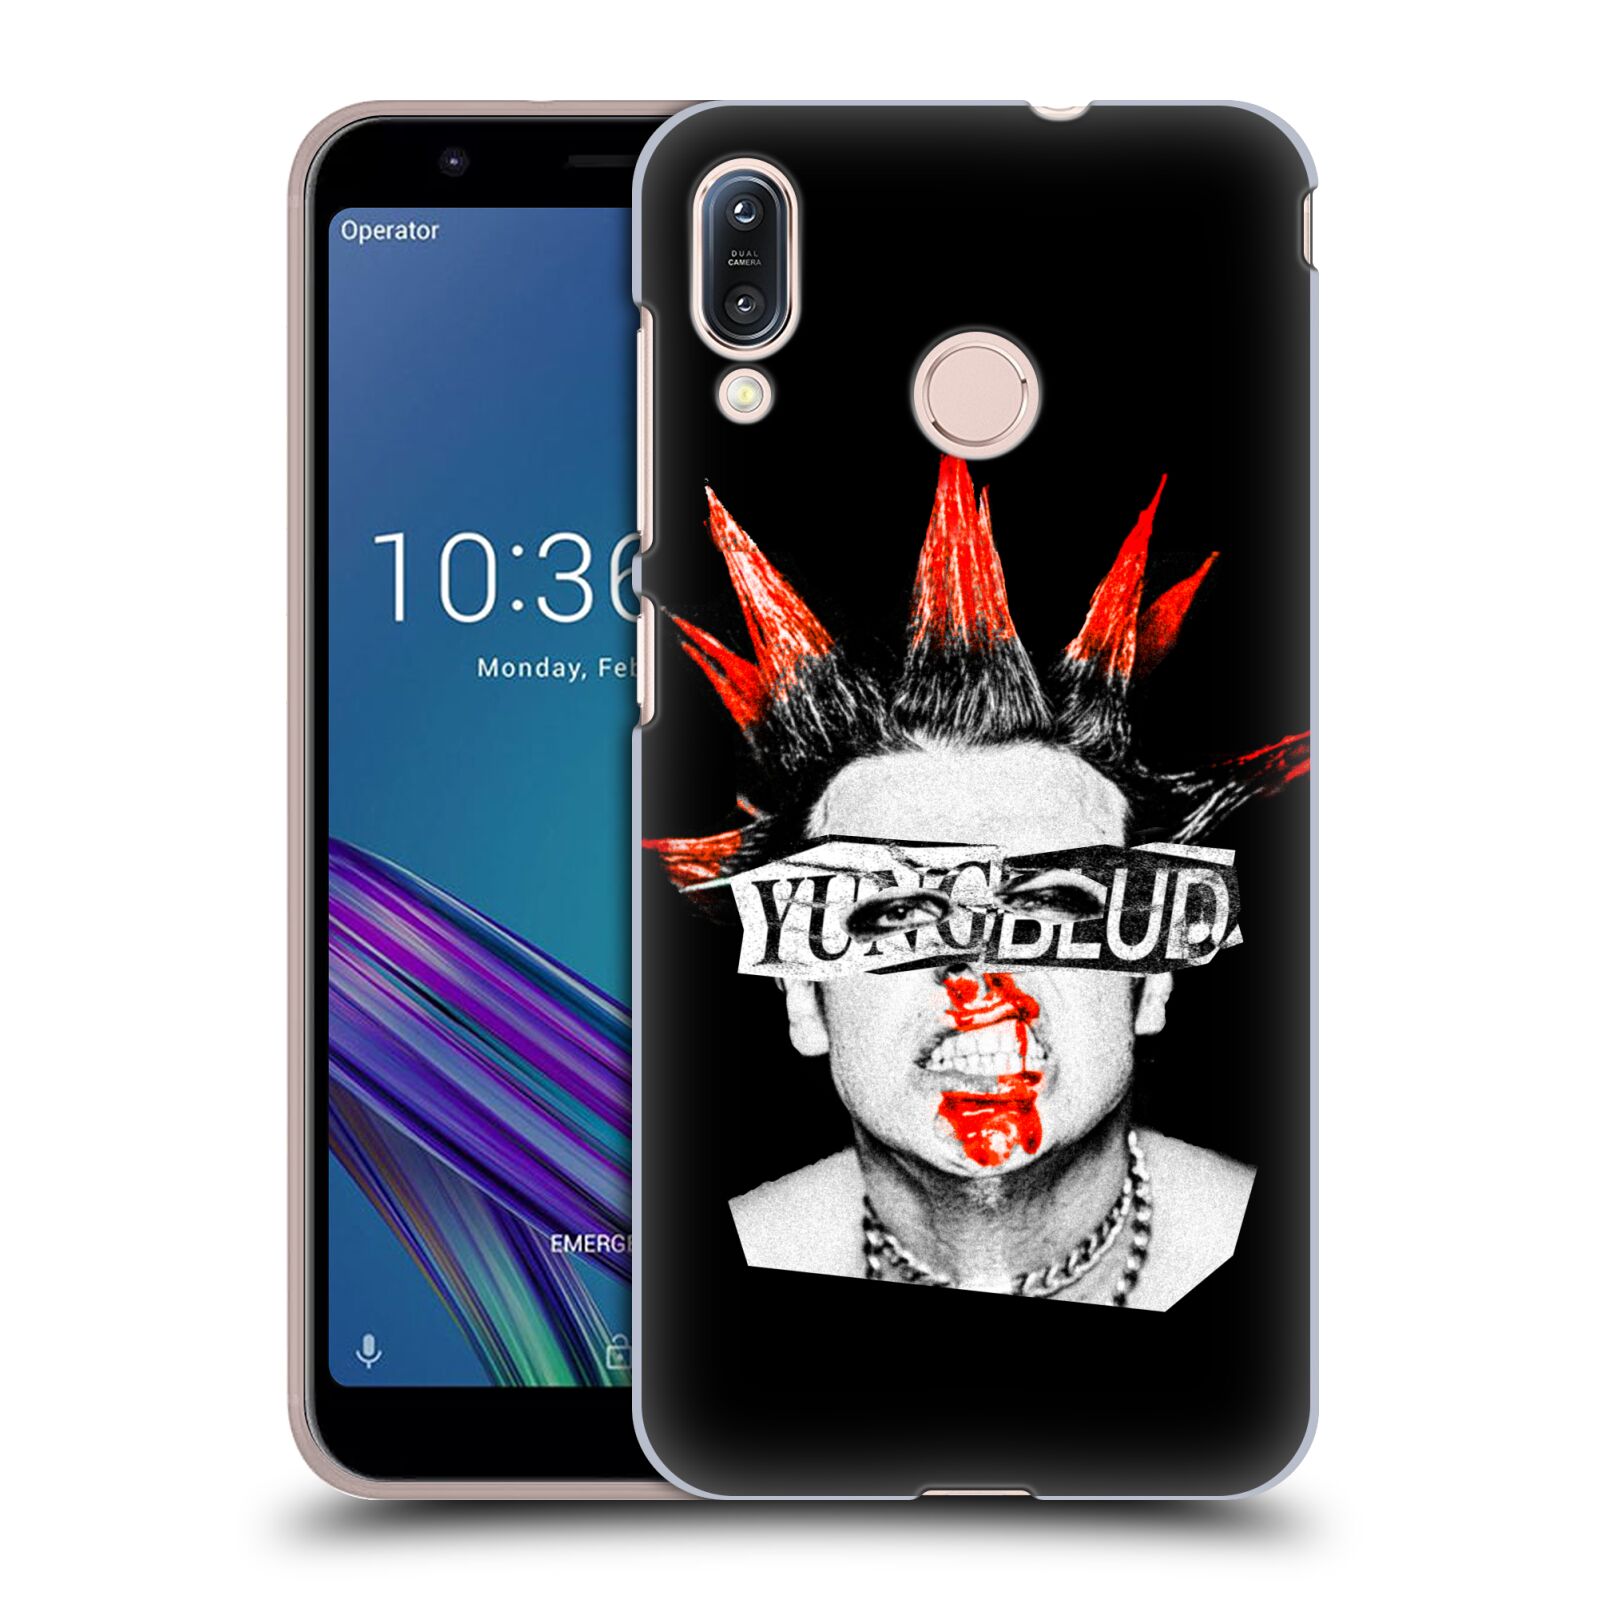 Zadní obal pro mobil Asus Zenfone Max (M1) ZB555KL - HEAD CASE - Zpěvák Yungblud pohled